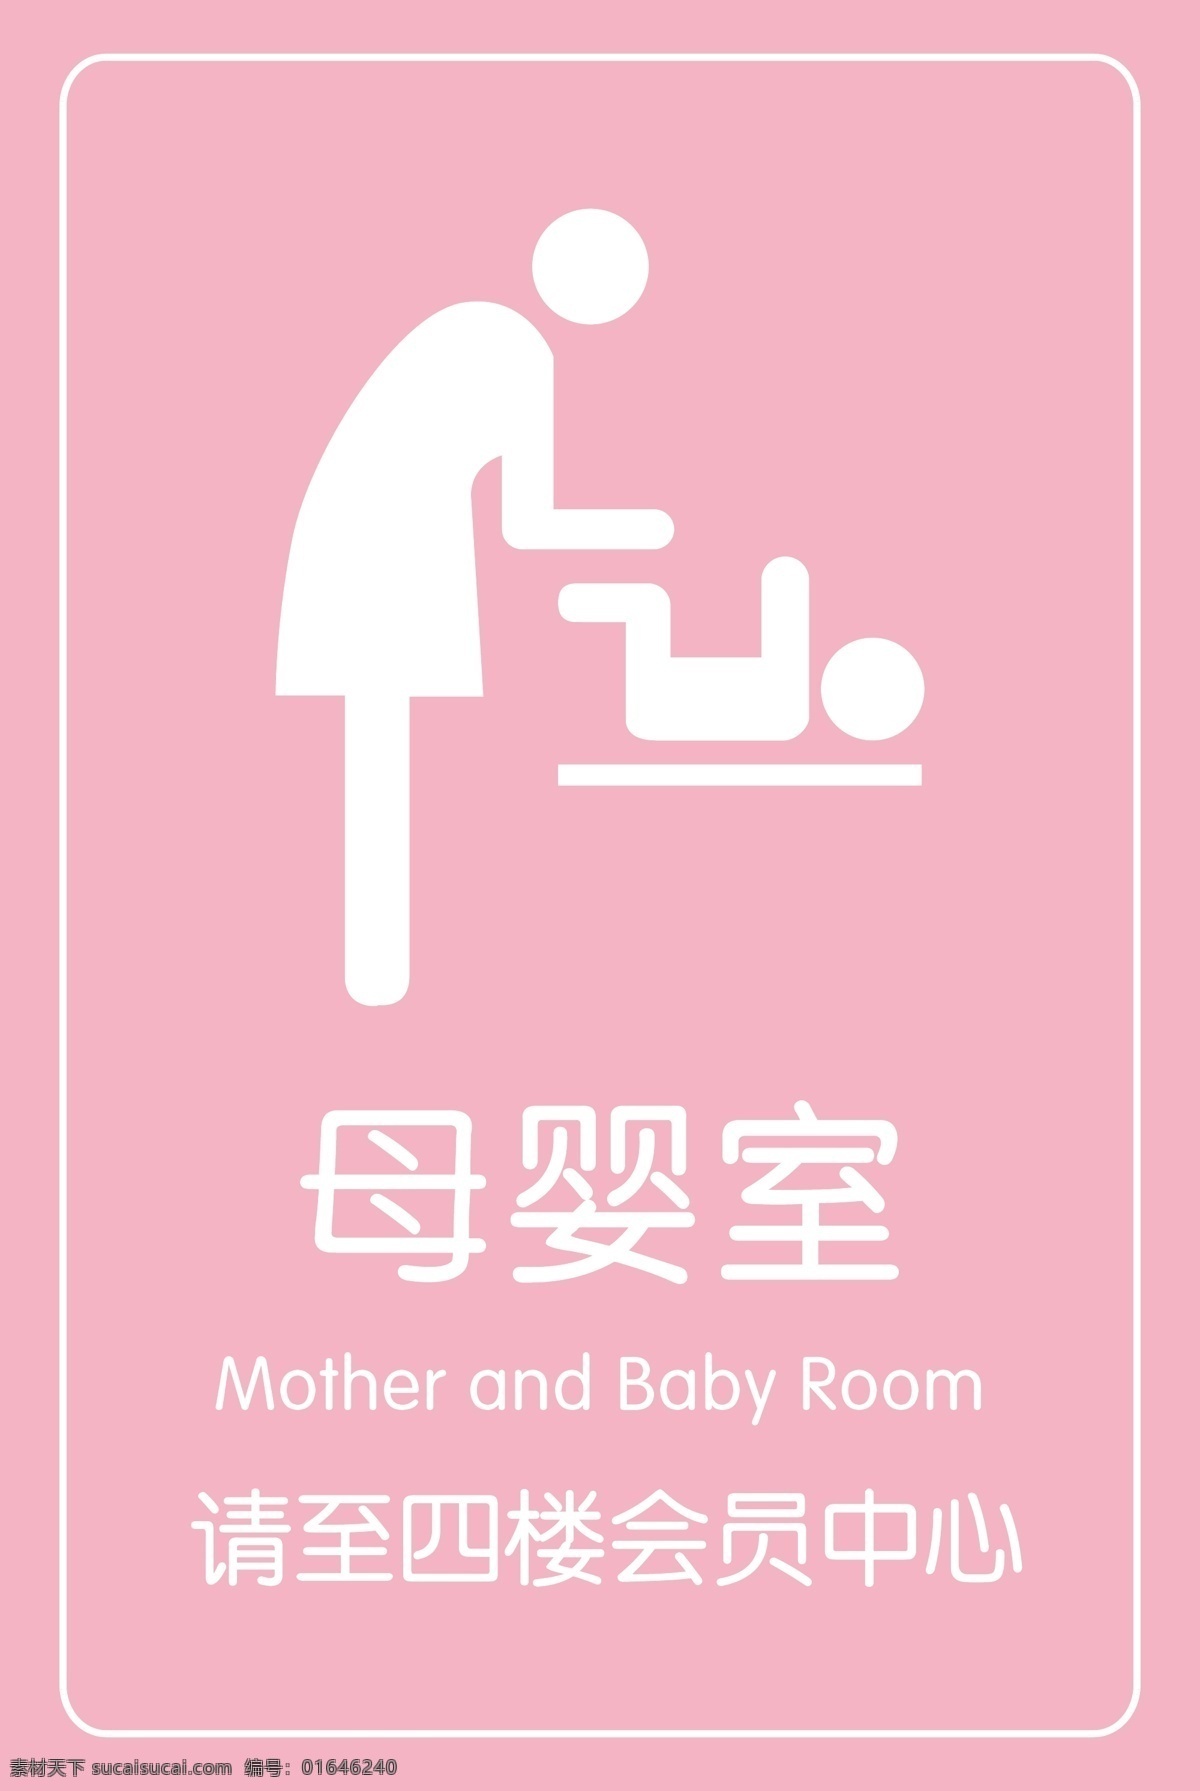 母婴室指示牌 母婴室 母婴展板 展板 指示牌 温馨展板 展板模板